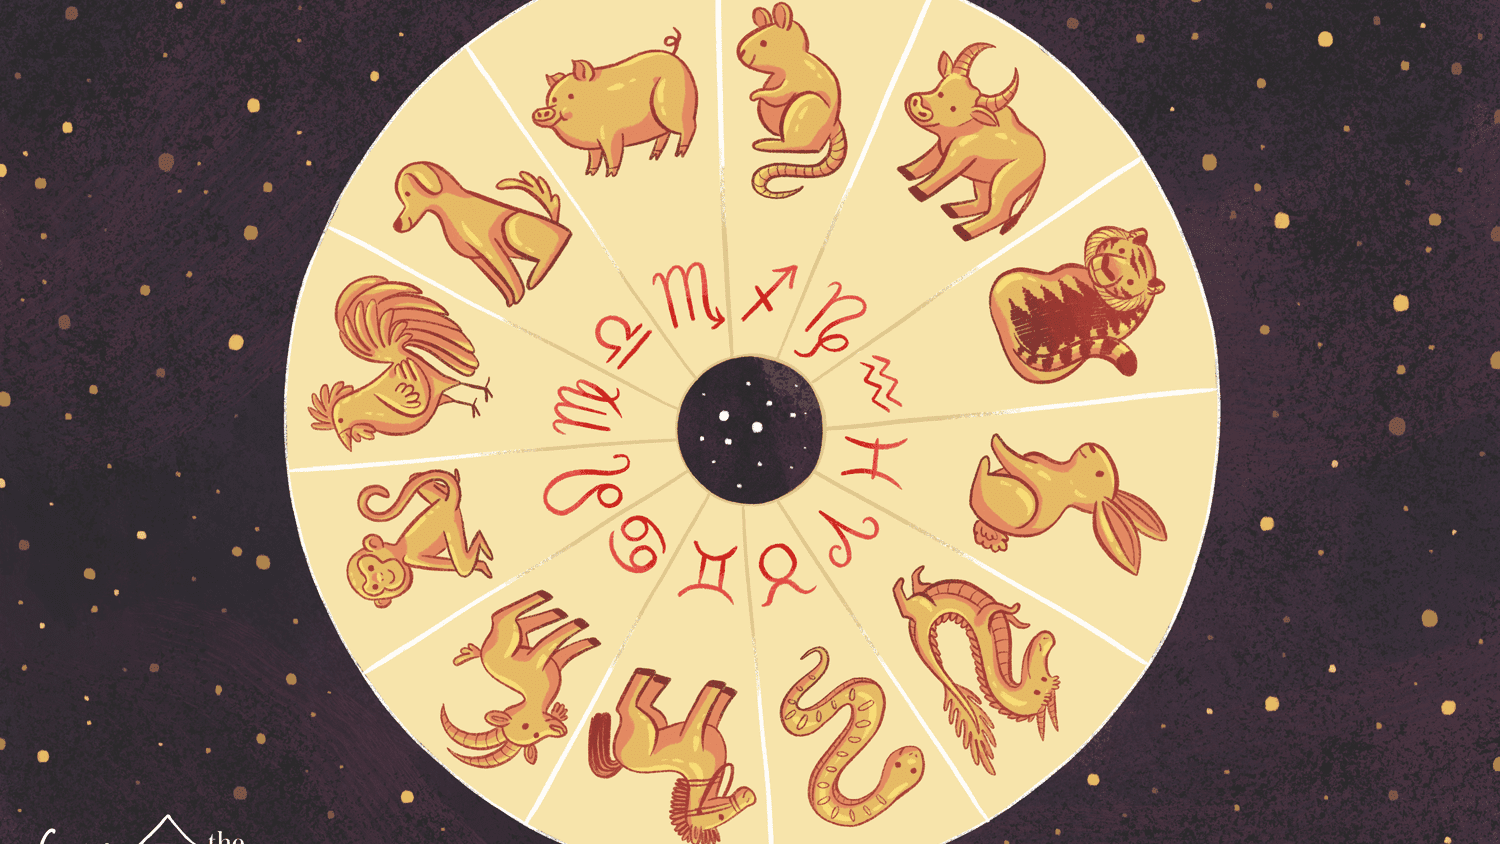 astrological sign for october 29